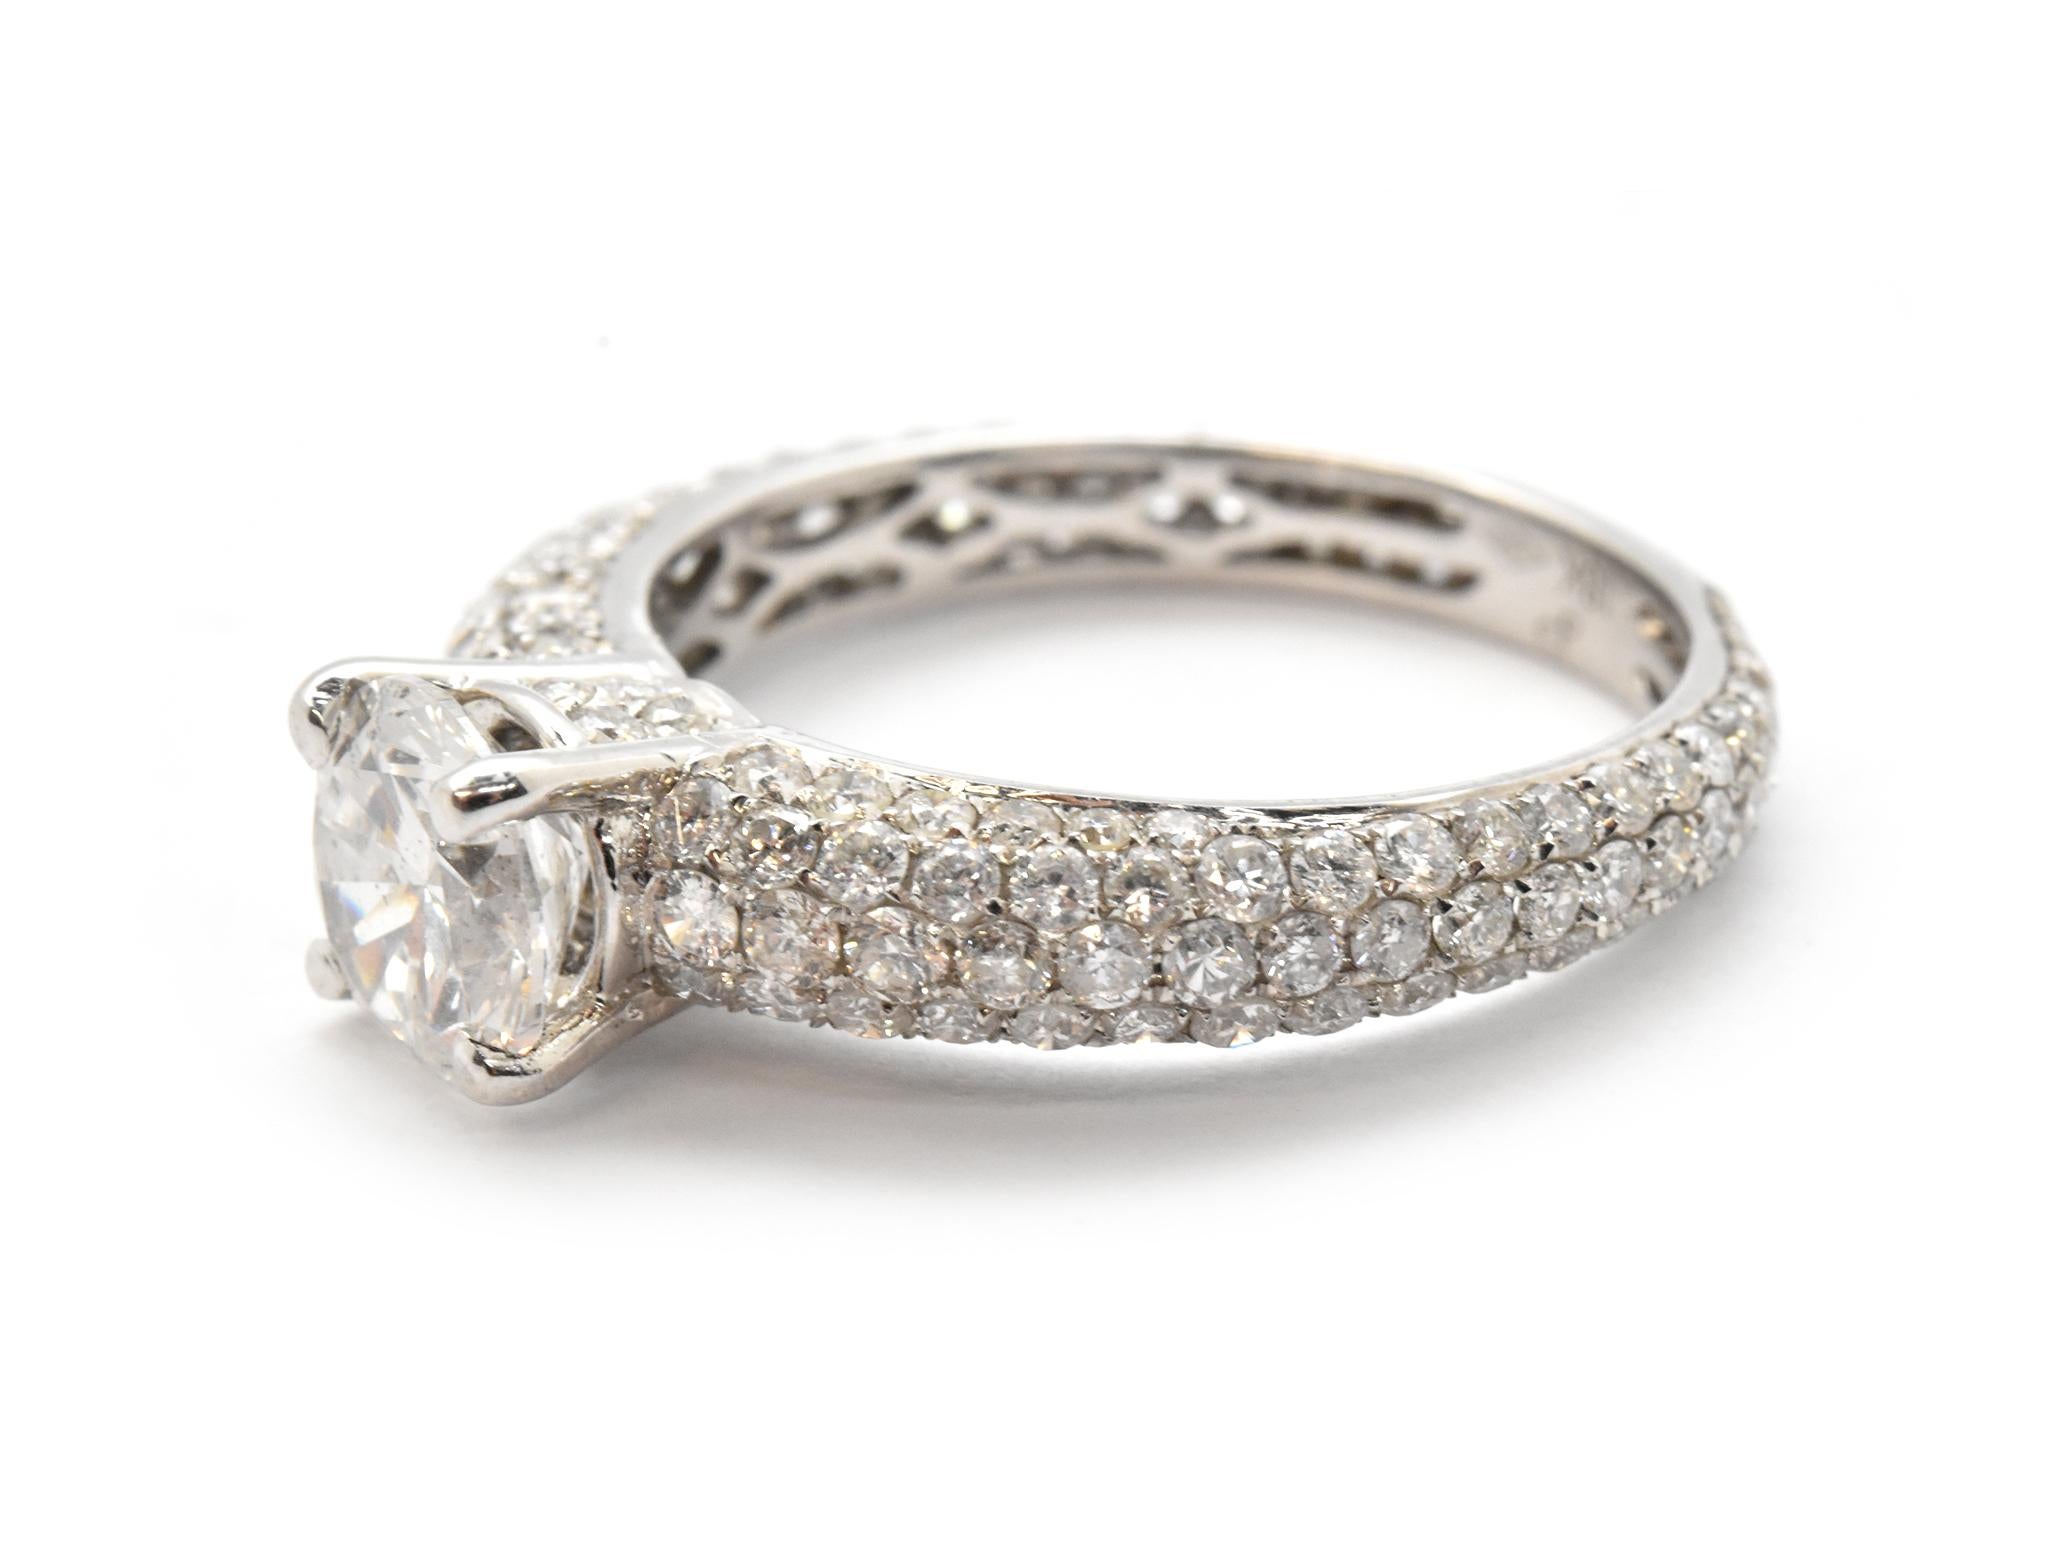 1.05 carat diamond ring price